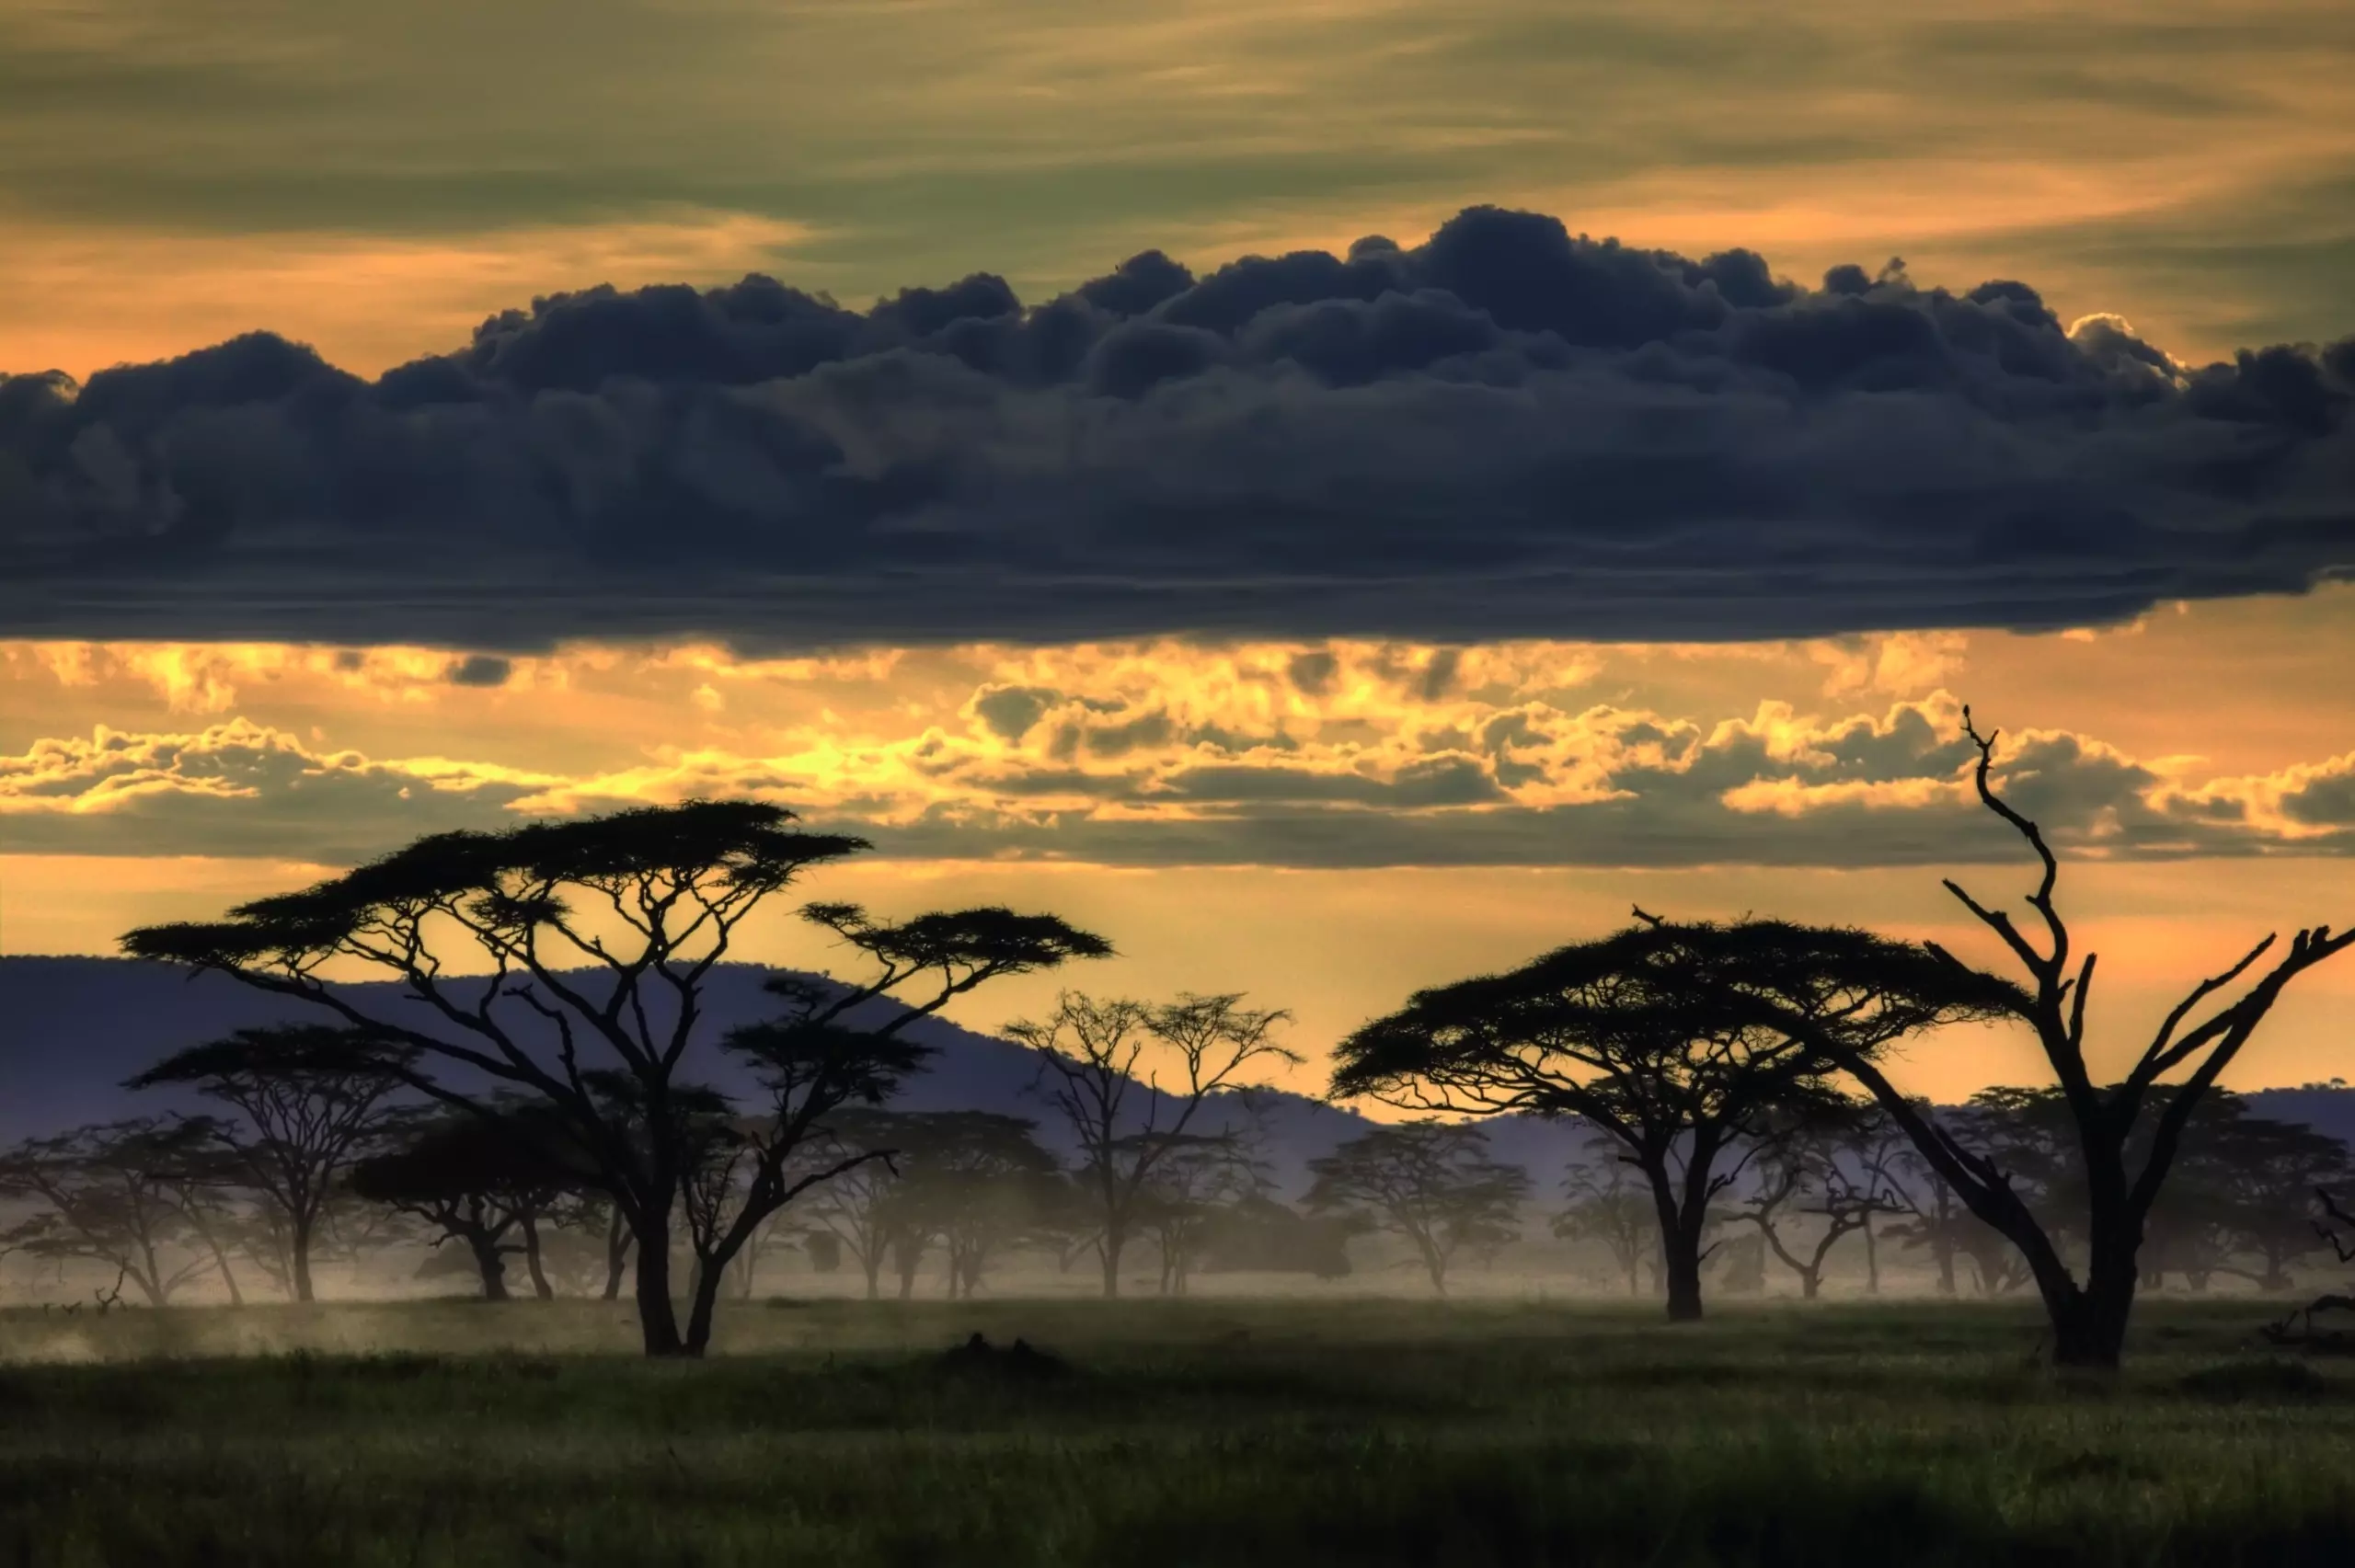 Wandbild (5129) Good evening Tanzania by Amnon Eichelberg präsentiert: Natur,Landschaften,Bäume,Sommer,Afrika,Berge